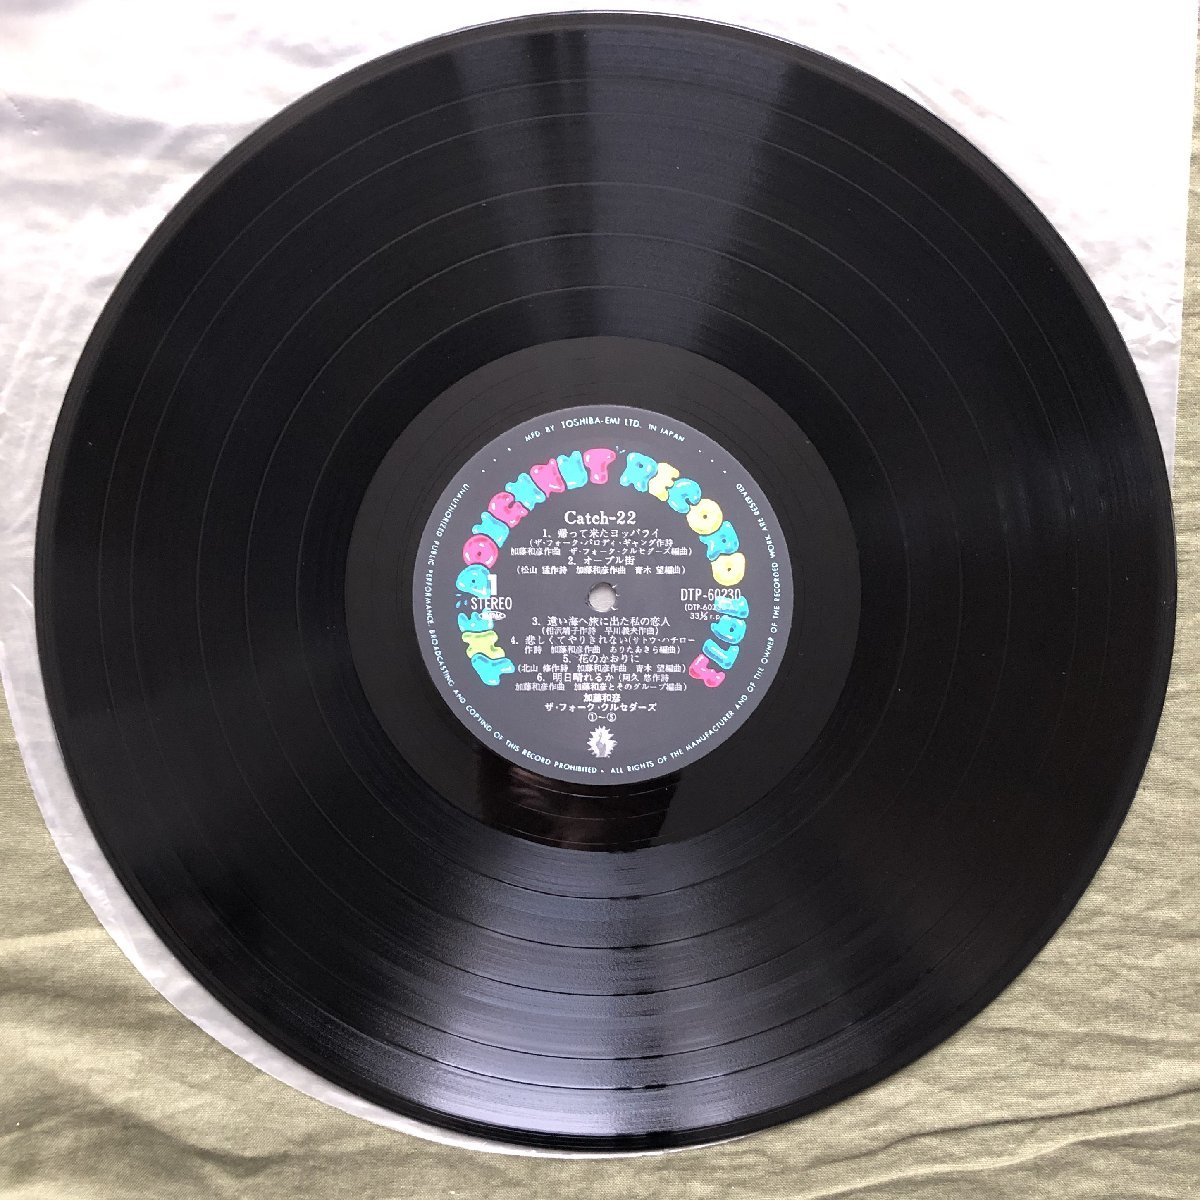 ジャンク品 2枚目盤欠品 美盤 レア盤 1977年 加藤和彦 Kazuhiko Kato 2枚組LPレコード Catch 22 J-Pop サディスティック・ミカ・バンド_画像8